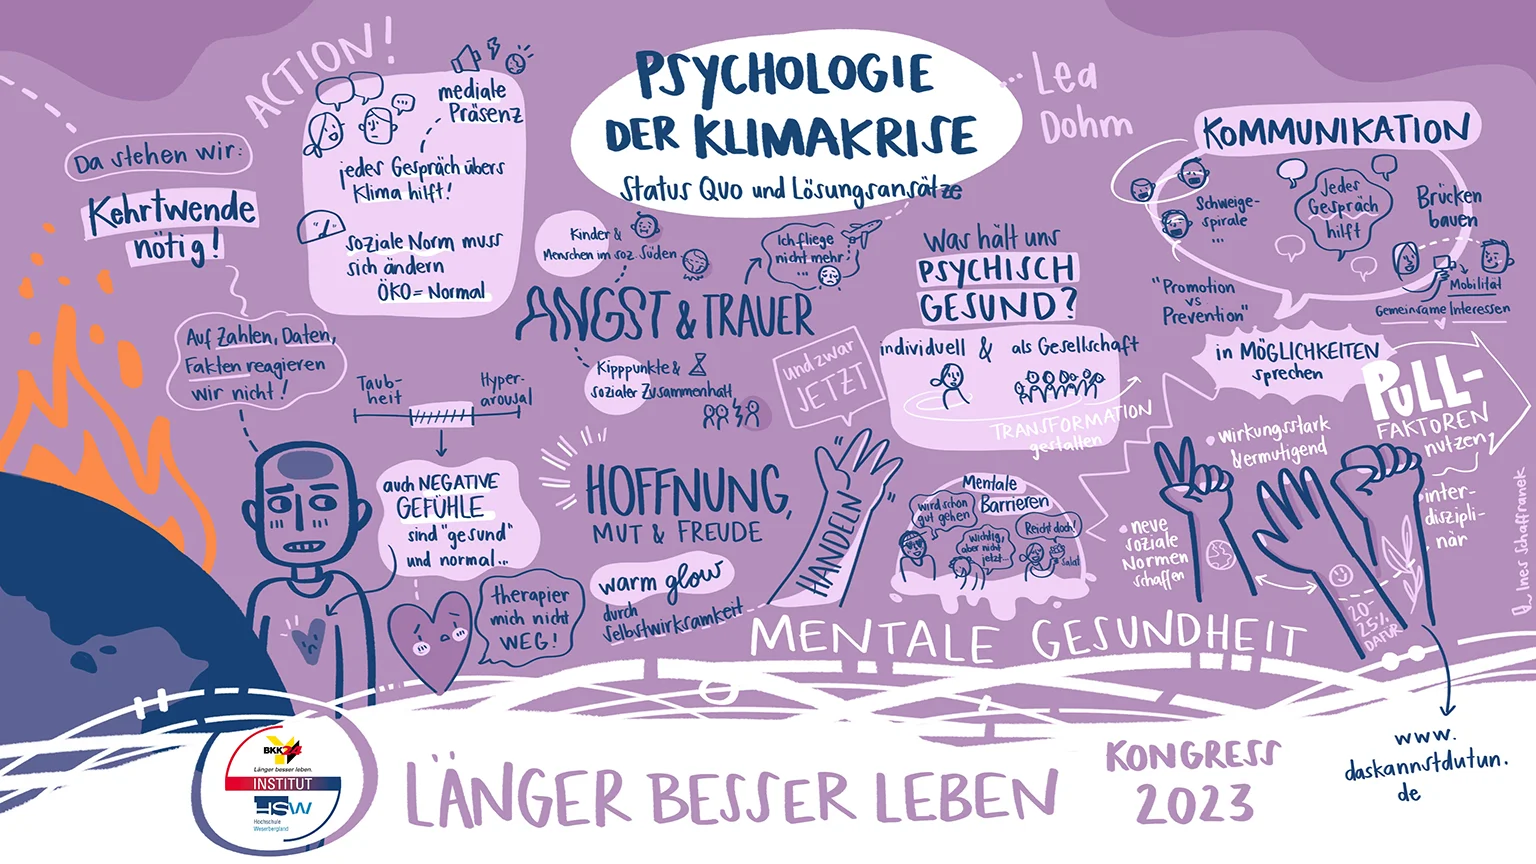 Psychologie der Klimakrise, Vortrag Lea Dohm, LBL-Kongress 2023